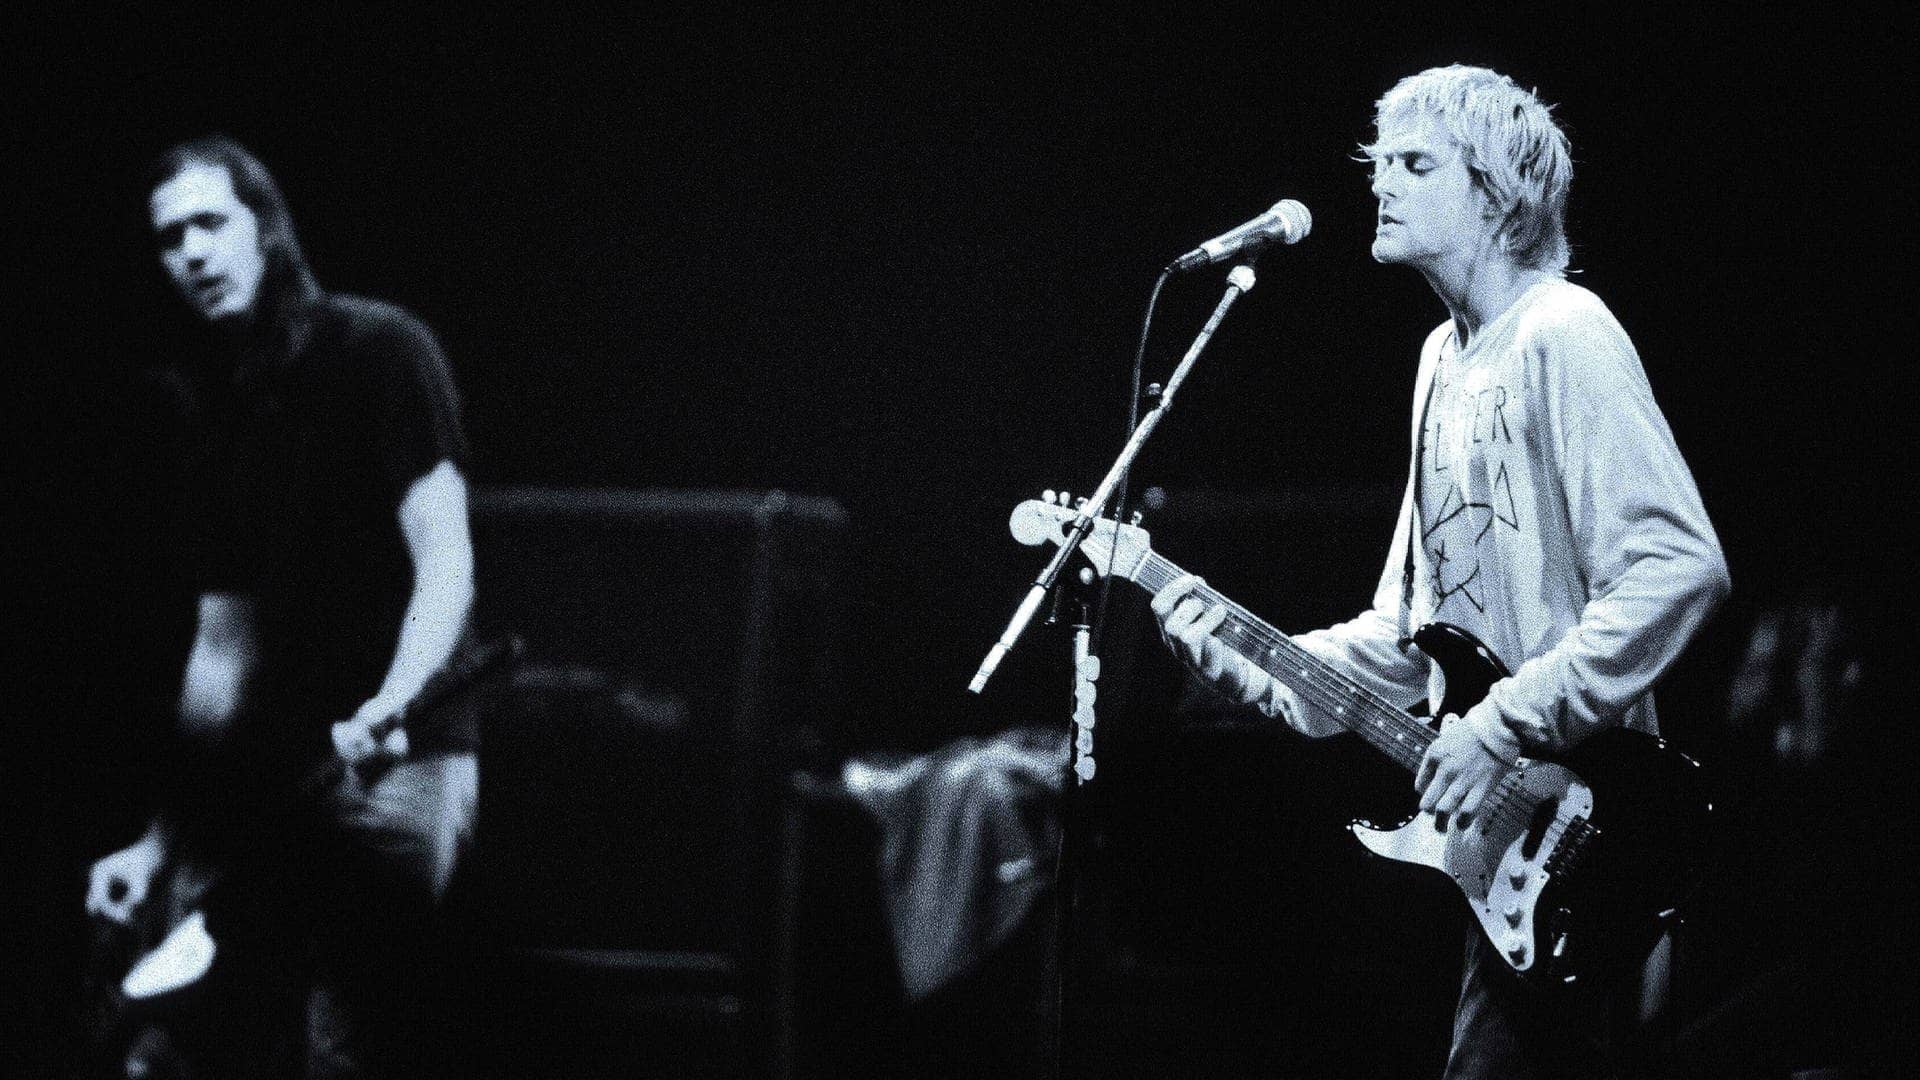 Nirvana-Sänger Kurt Cobain (re.) und Bassist Krist Novoselic während eines Konzerts in Paris (Foto: imago images / LFI)